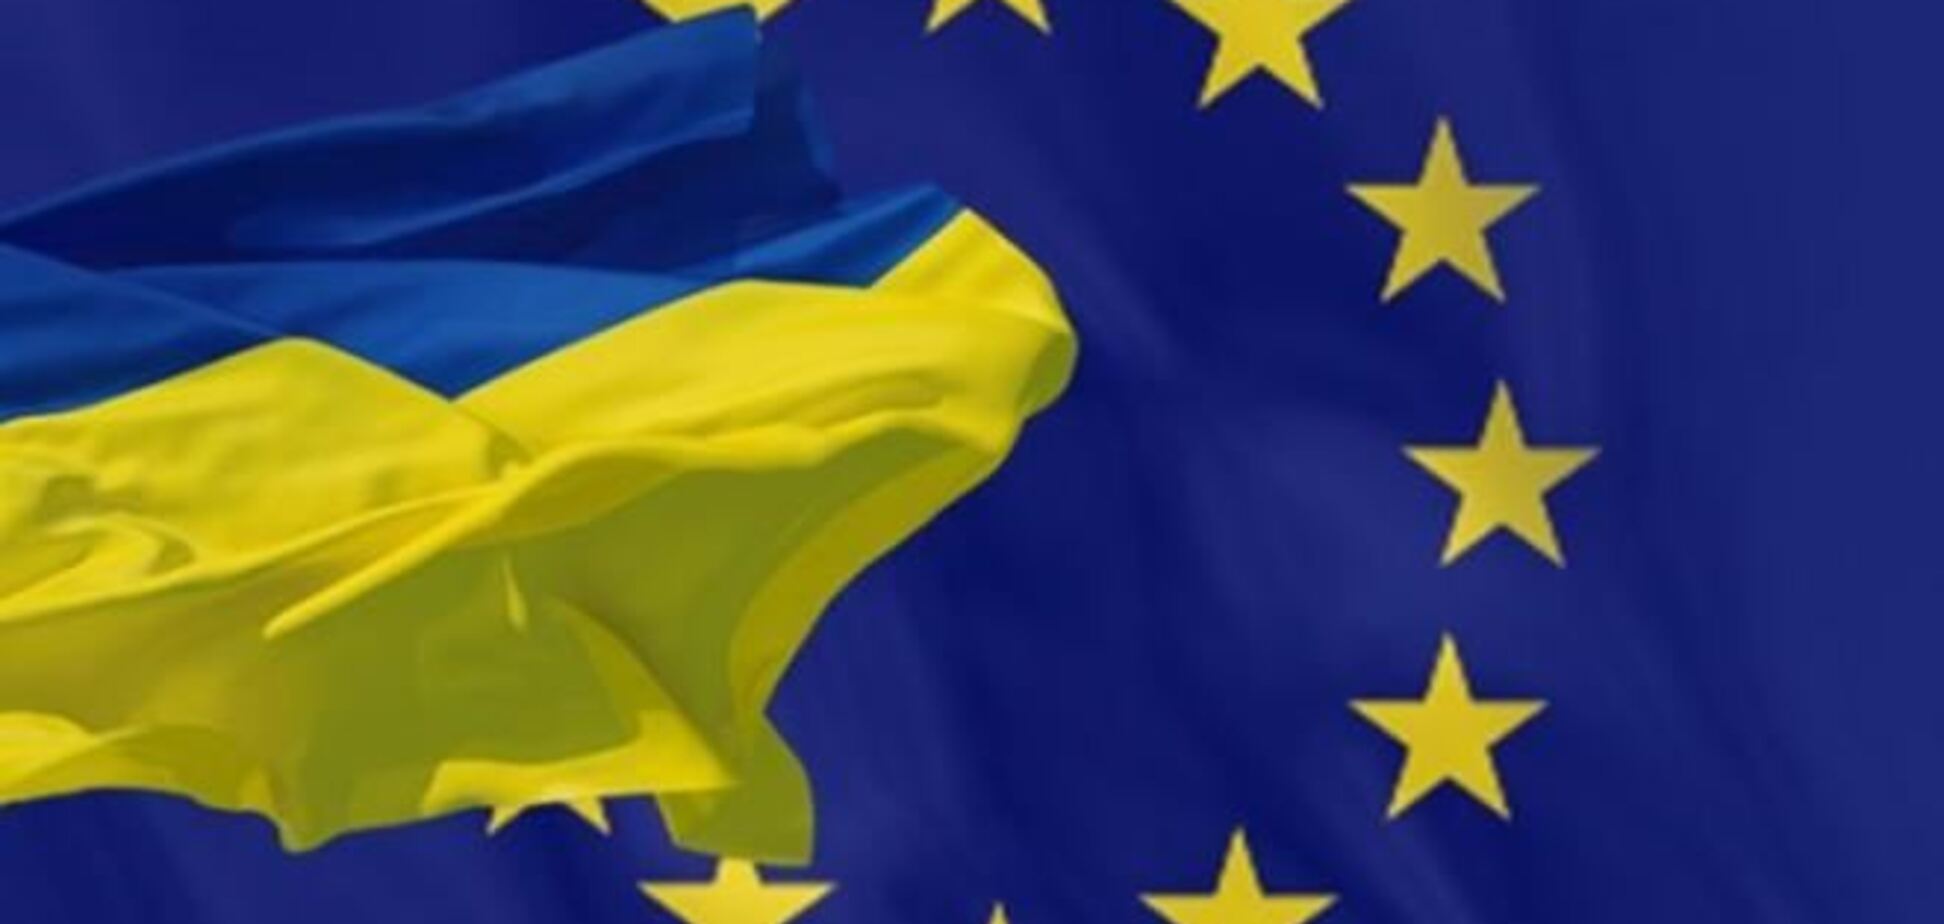 ЕС отложил принятие решения по Соглашению об ассоциации с Украиной - СМИ